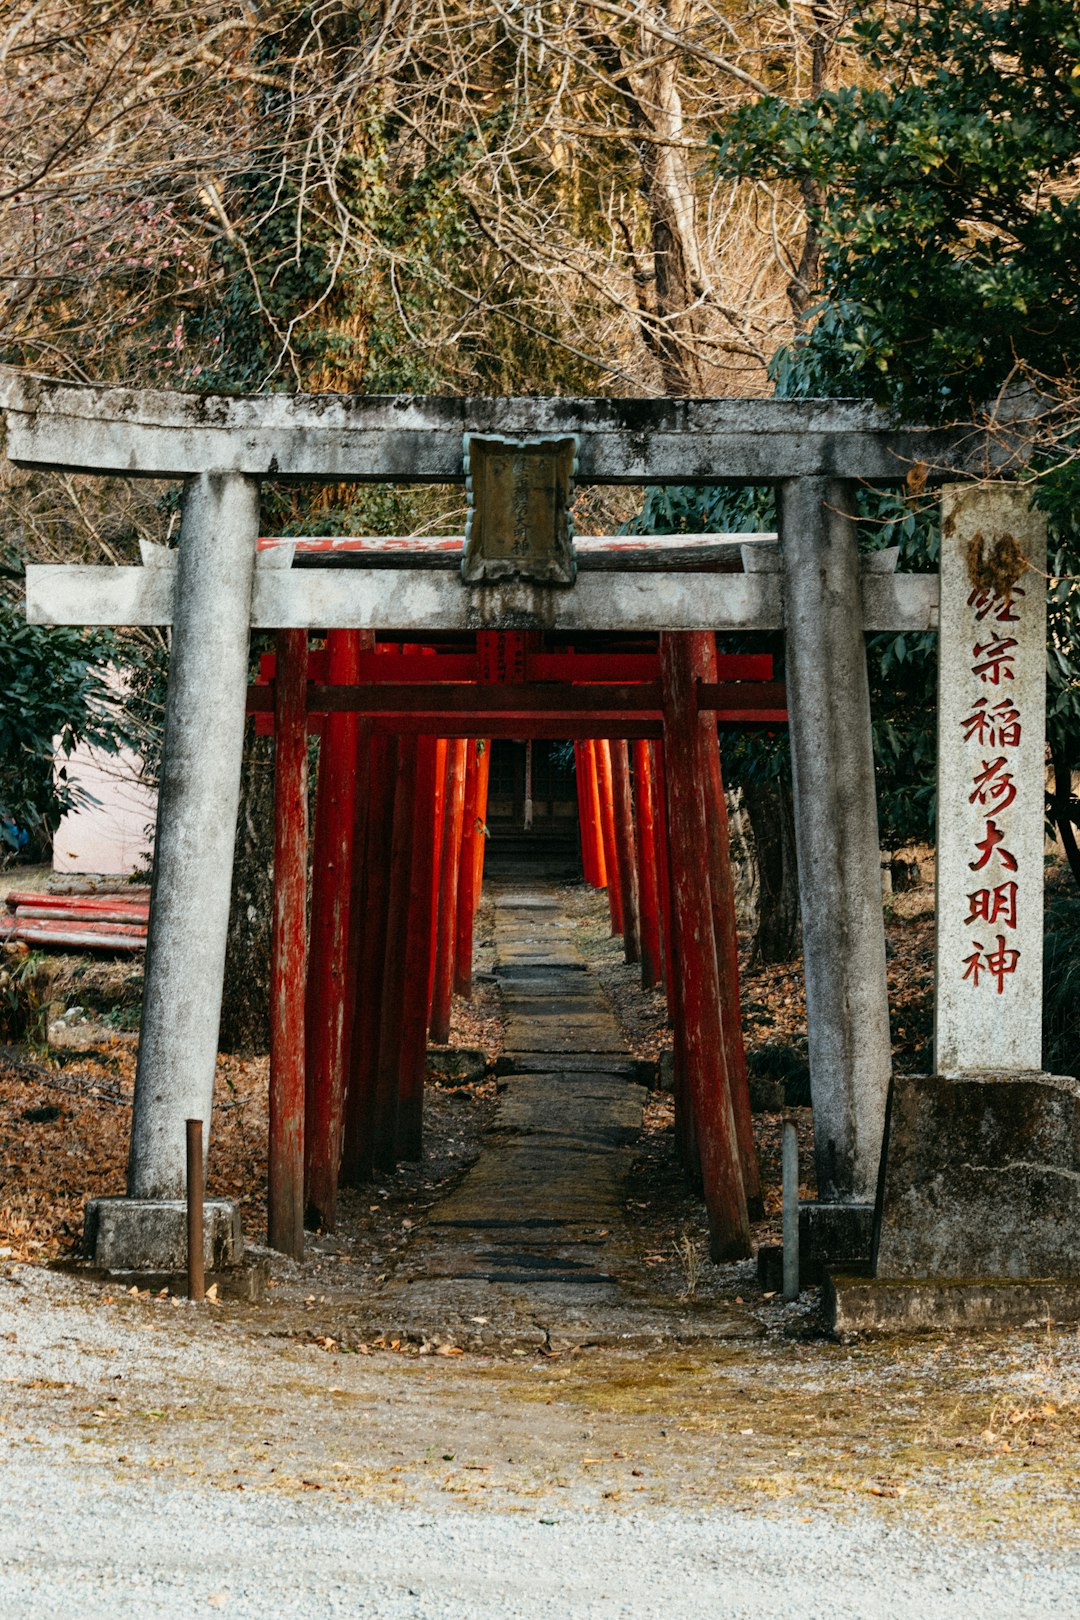 Temple photo spot Kinugawa Onsen Nasu